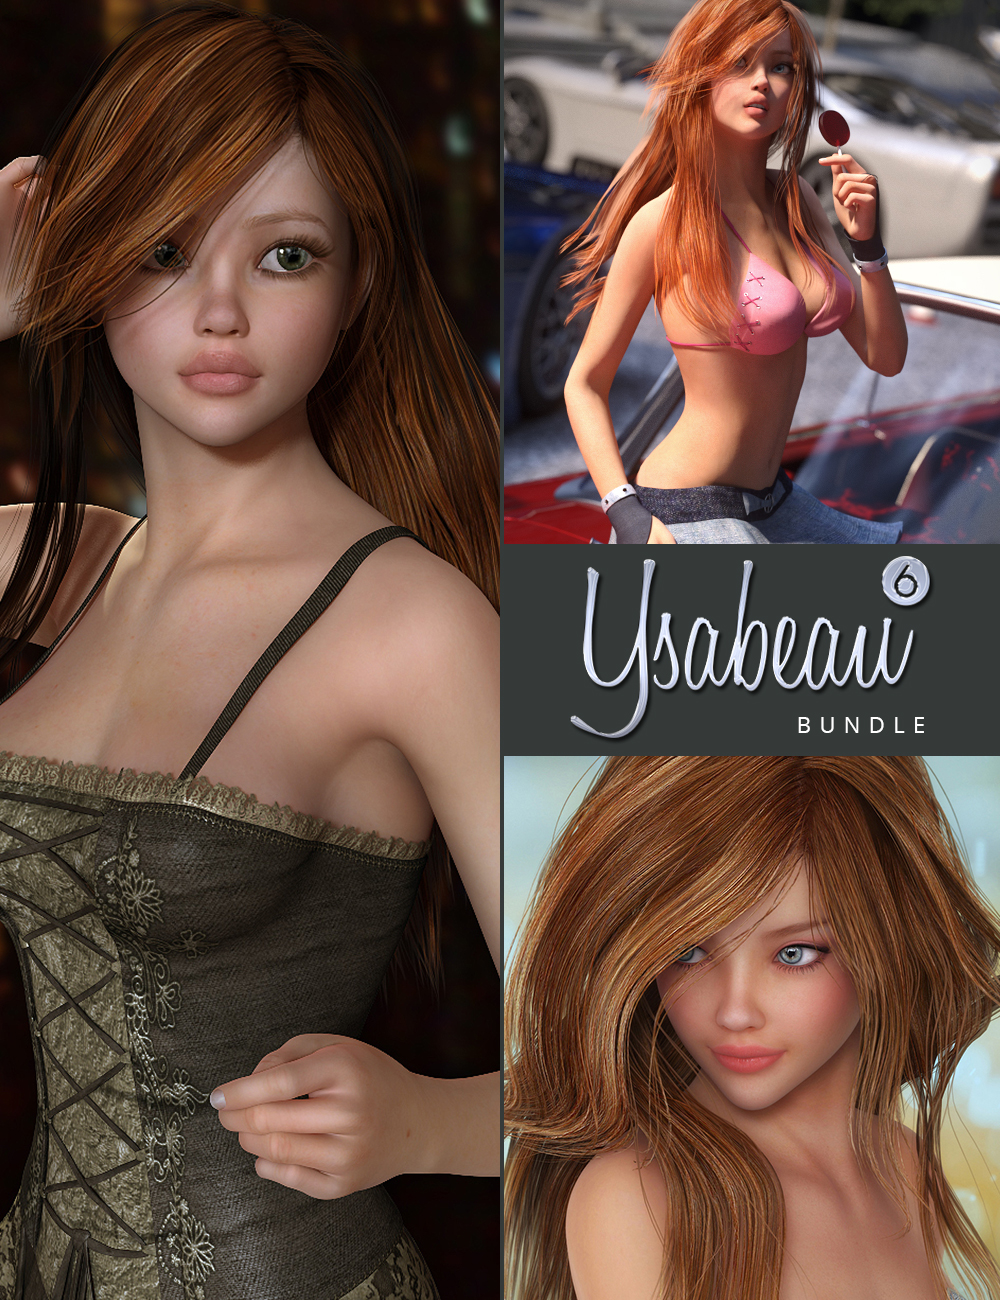 Ysabeau 6 Bundle by: , 3D Models by Daz 3D